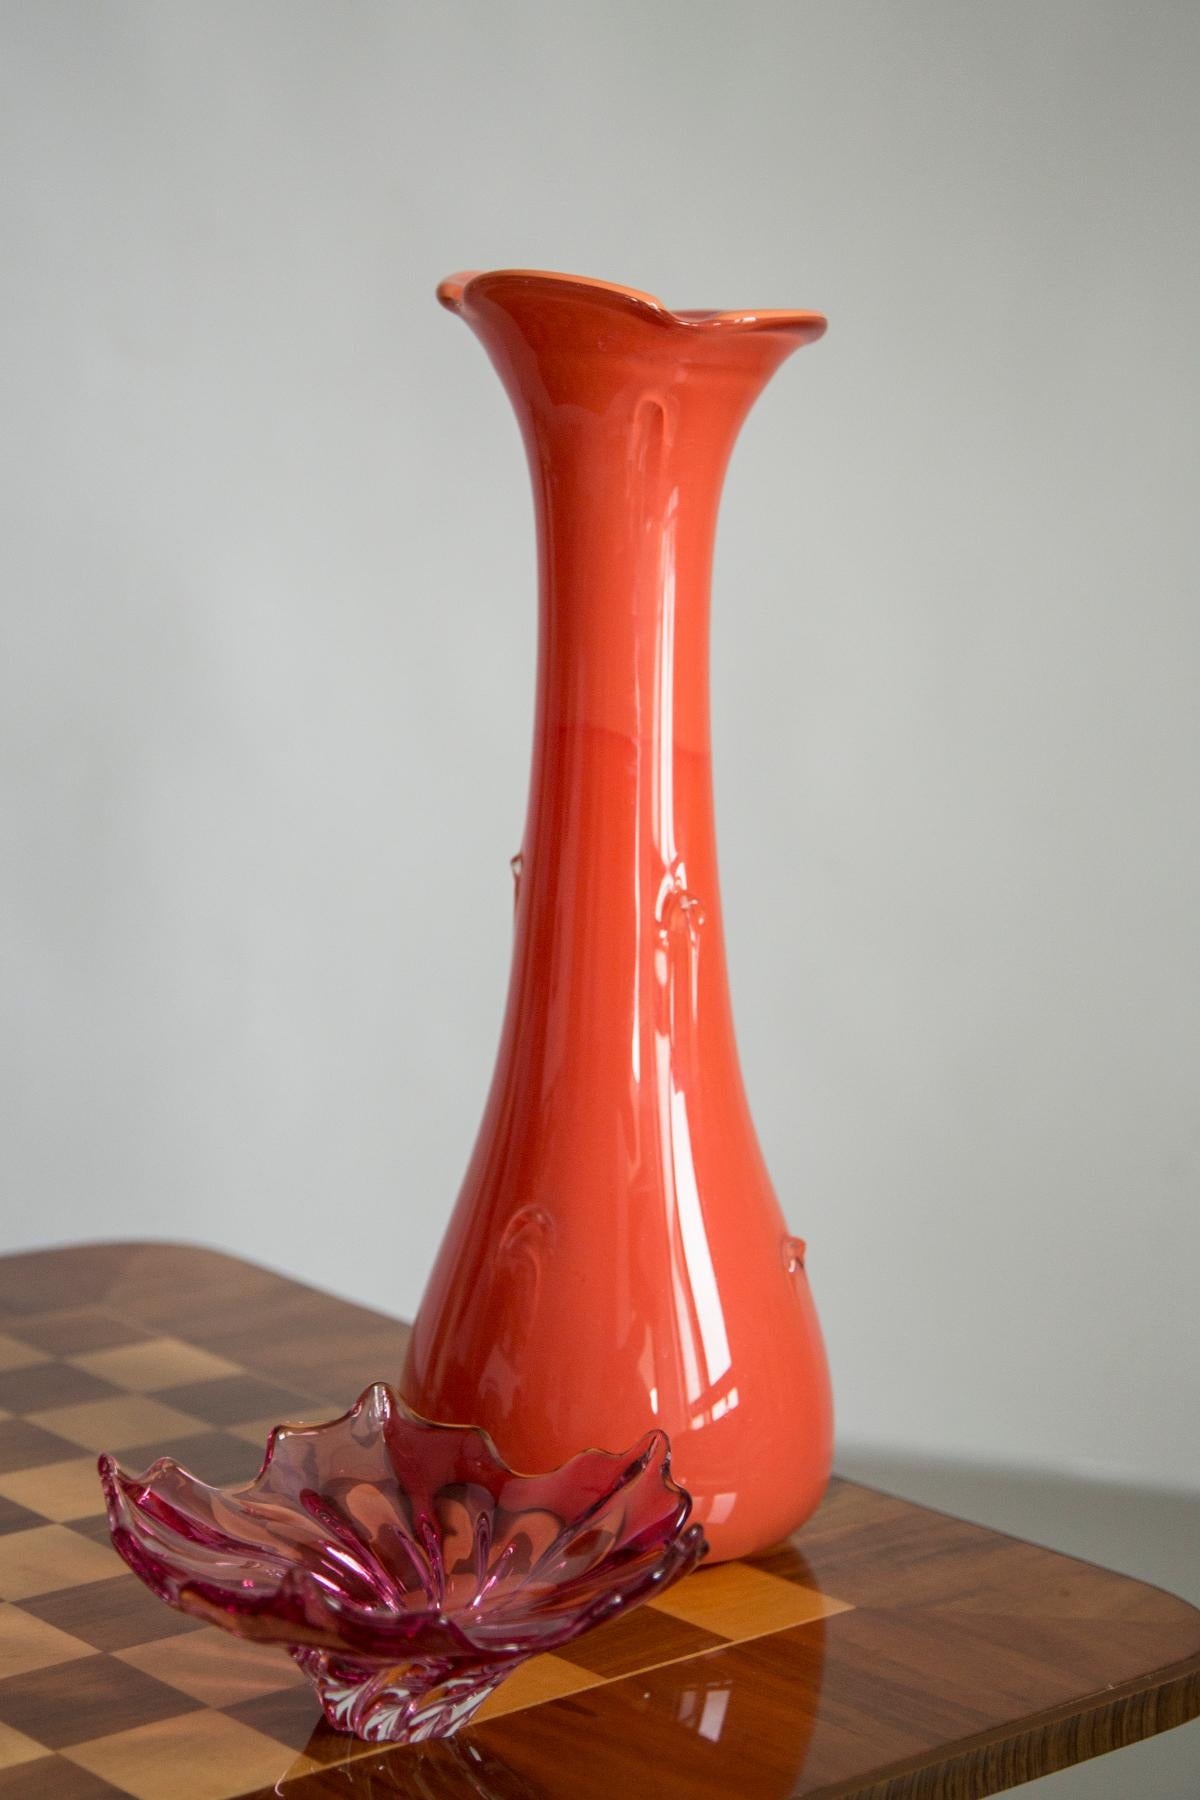 Vase, hergestellt in der Glashütte Tarnowiec in Polen, 
entworfen von J. Słuczan-Orkusz. 
Soda-Glas, massegefärbt, handgeformt. 
Vintage-Produkt aus den 1970er Jahren

Abmessungen: Höhe 40 cm

Sehr guter Zustand, kleine Kratzer auf der Unterseite,